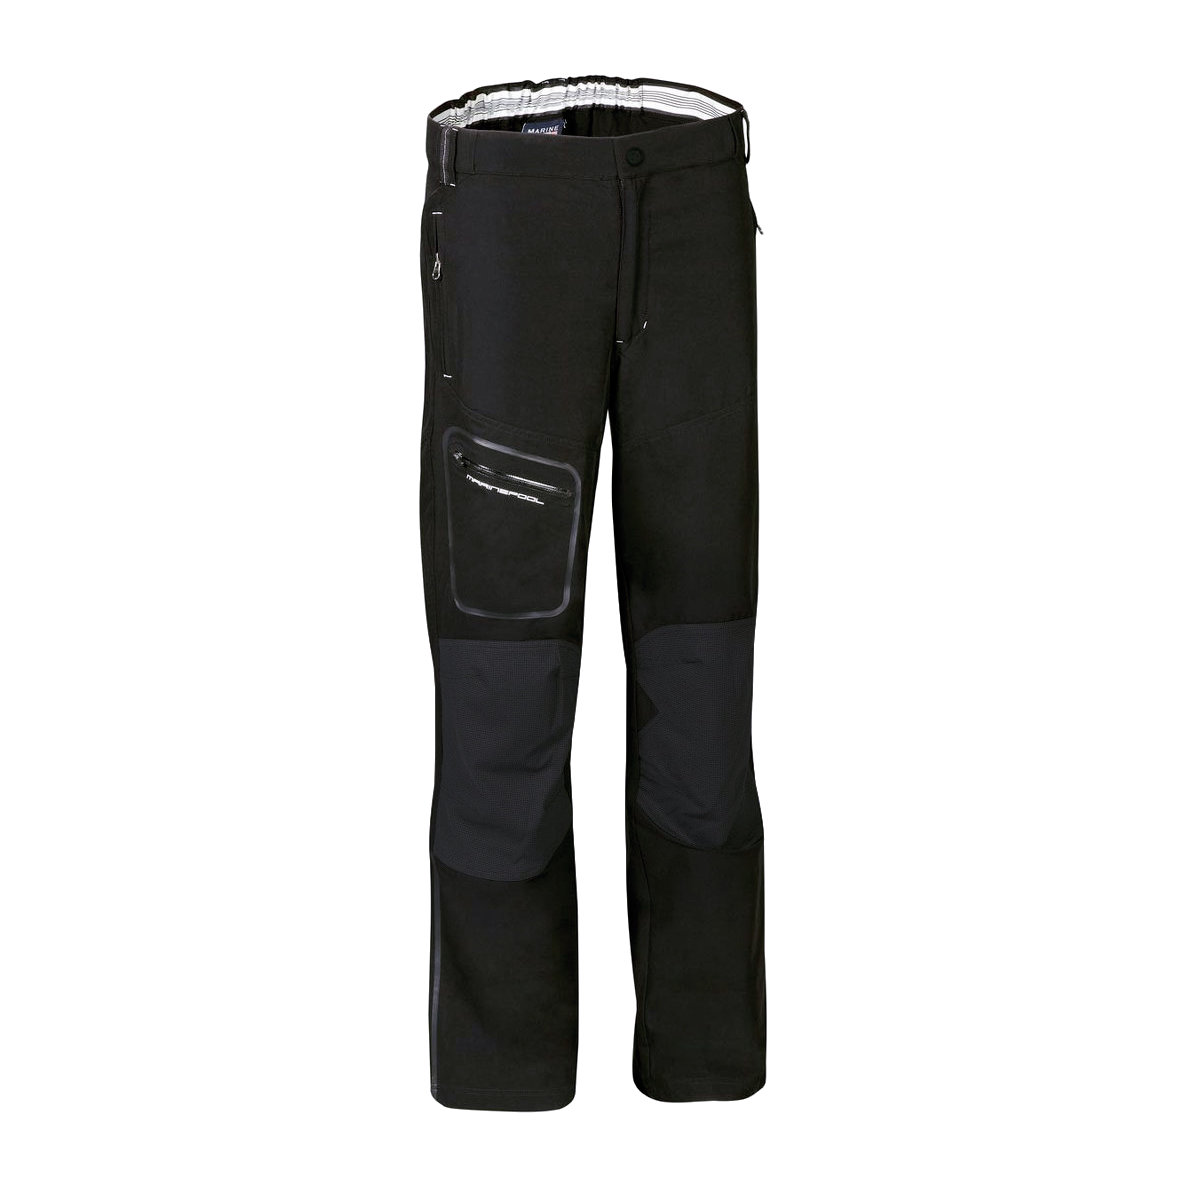 Marinepool Laser pantalon de navigation, homme - noir, taille L